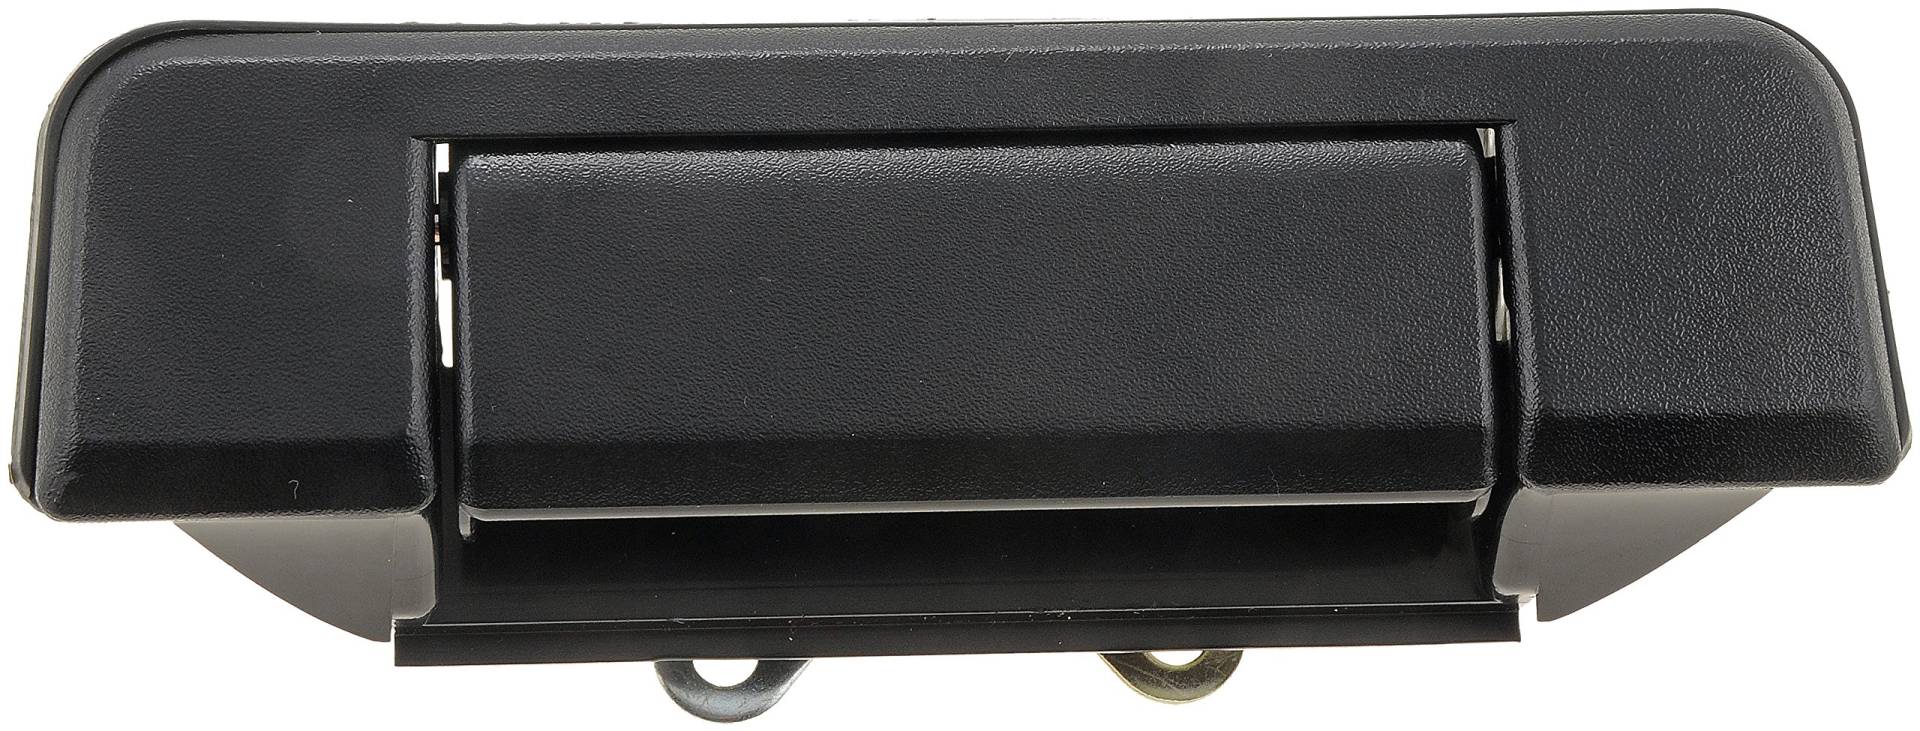 Dorman Heckklappengriff für ausgewählte Toyota Modelle, schwarz, 77059 von Dorman